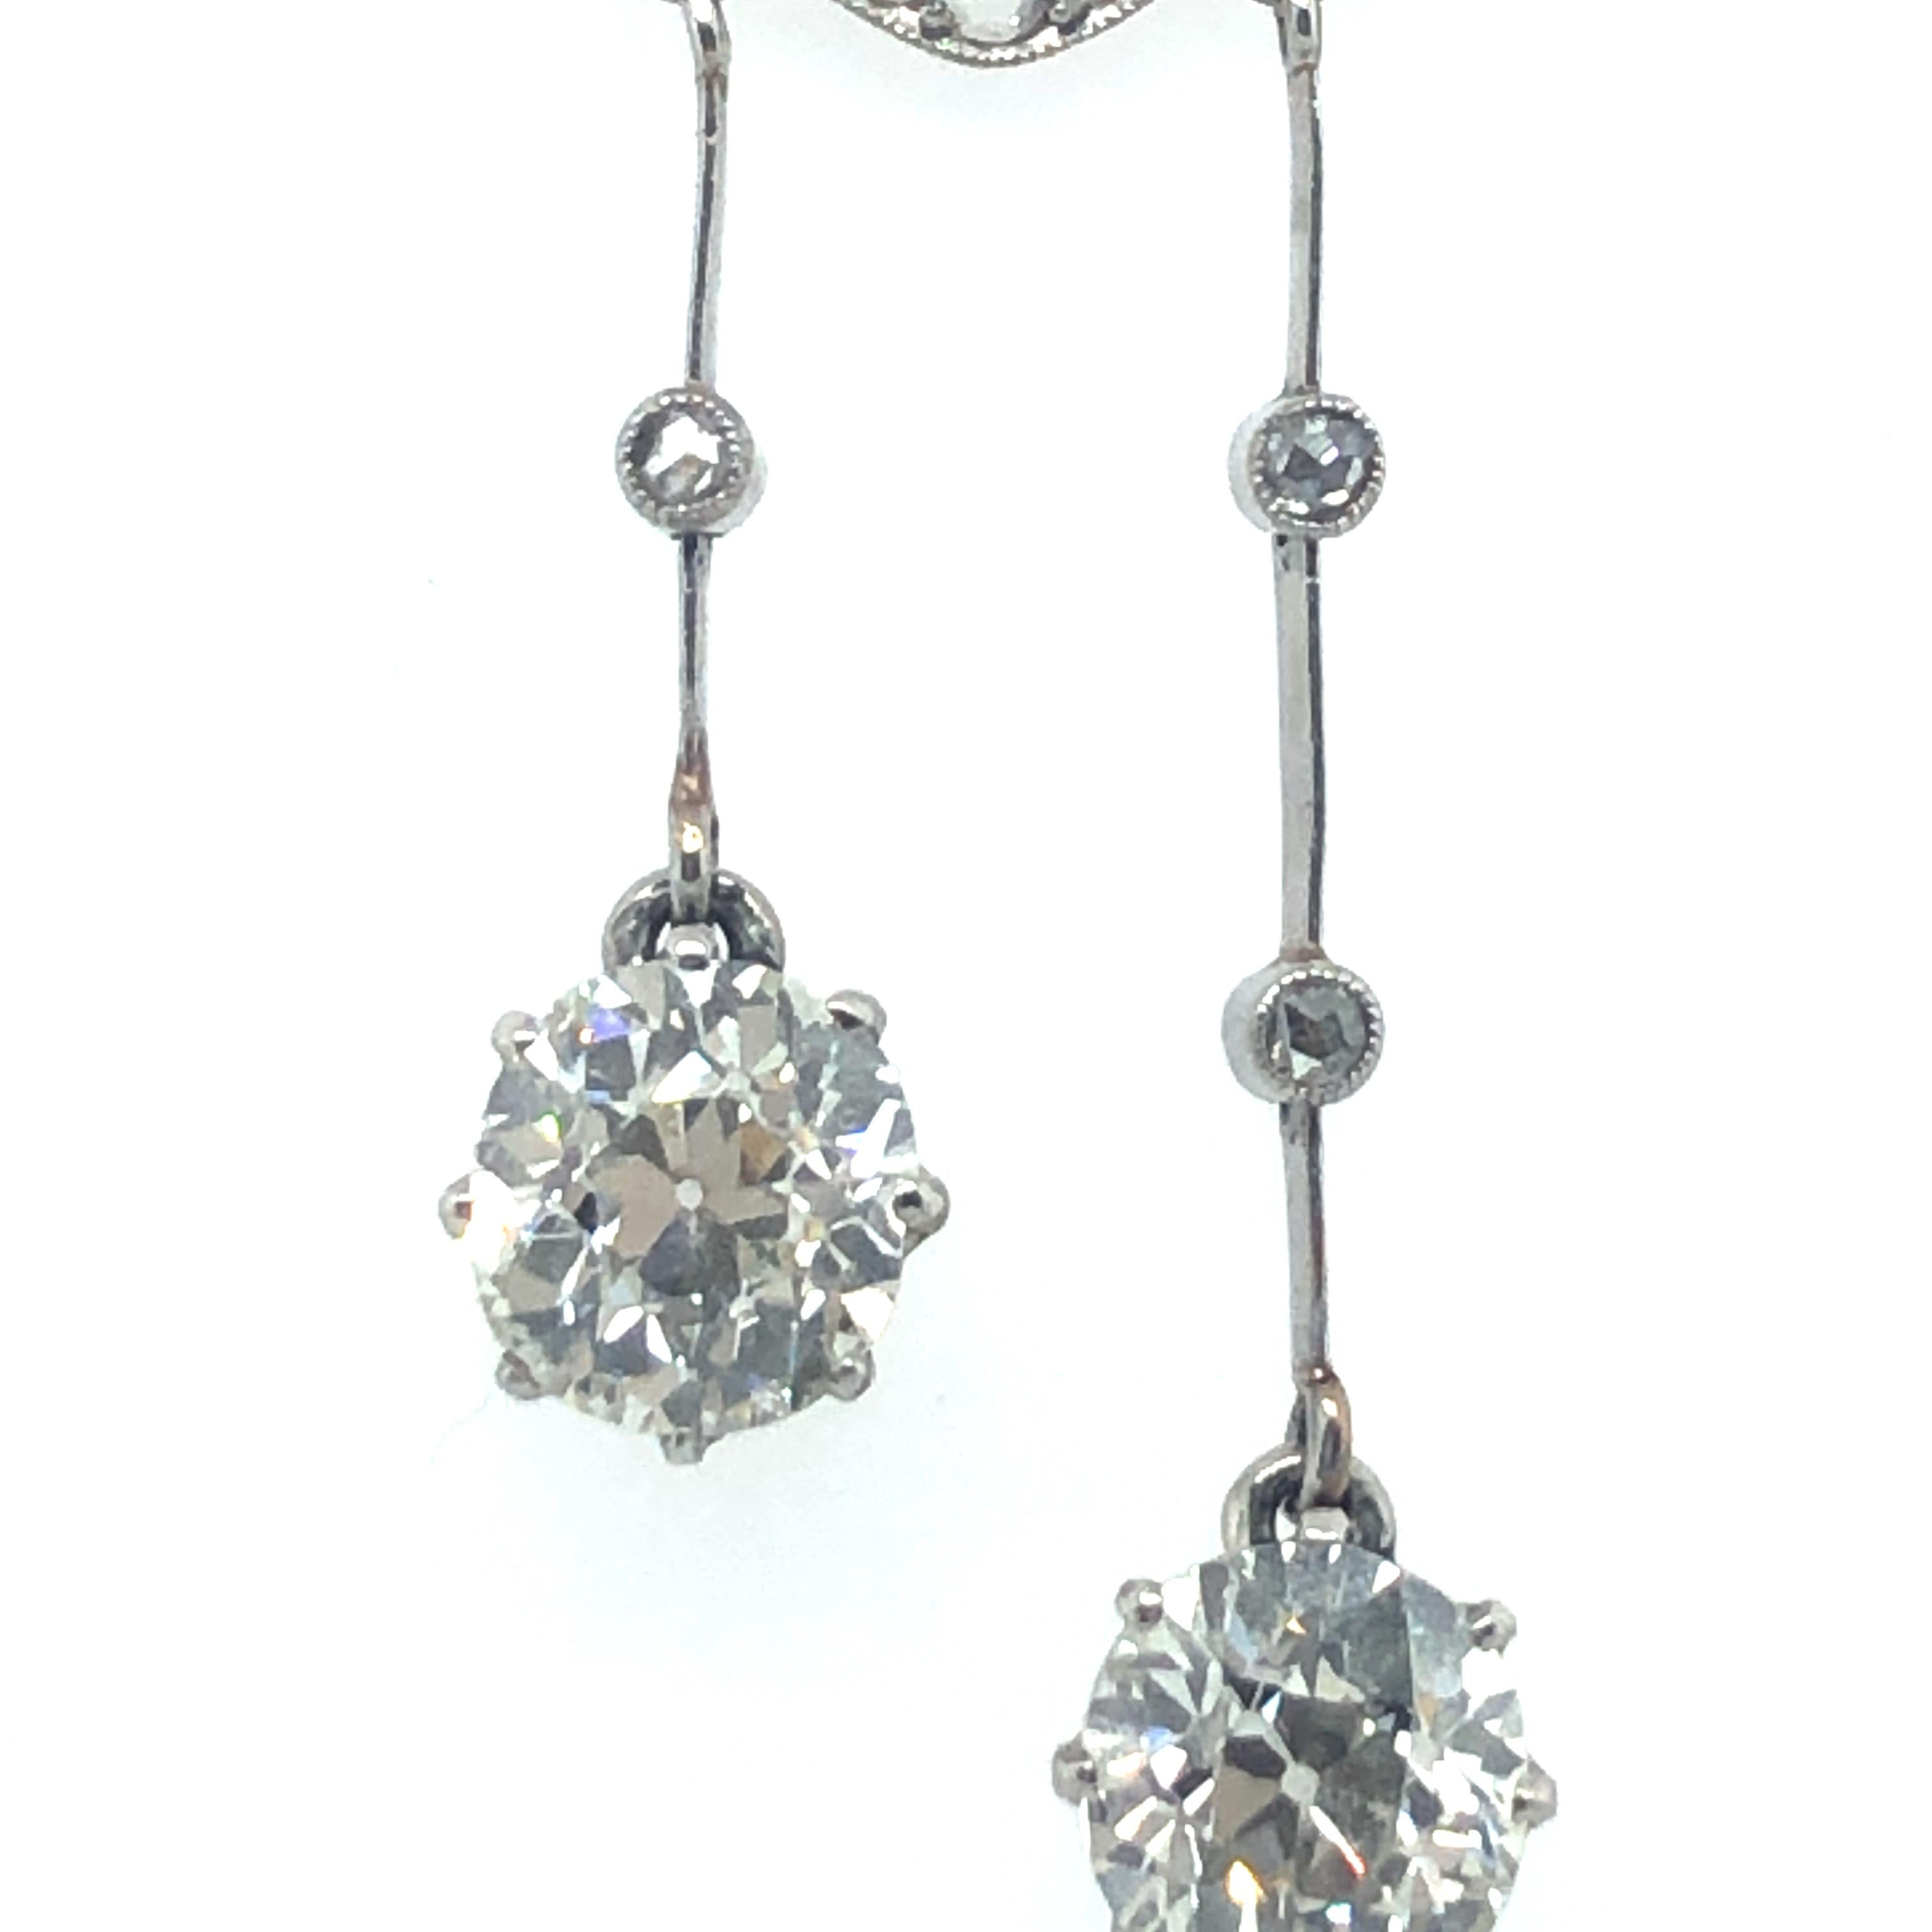 Women's or Men's Gorgeous Belle Époque Négligée Diamond Necklace in Platinum 950 For Sale